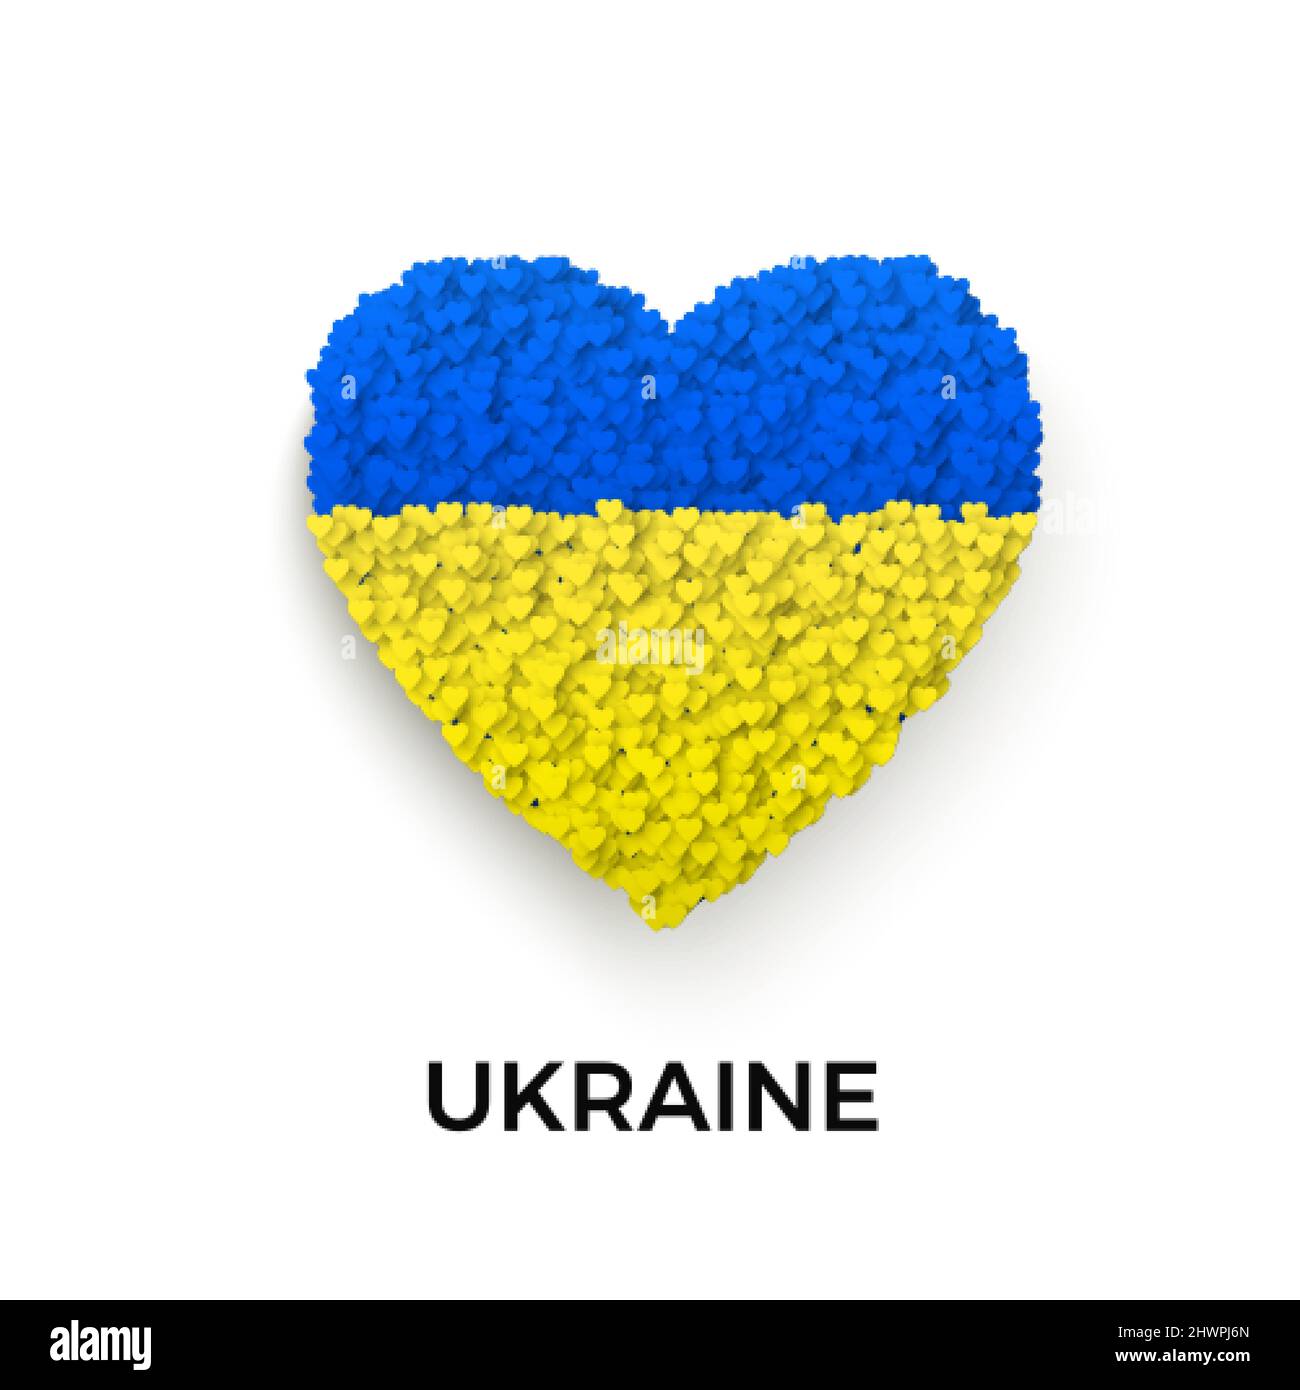 Arrêter la guerre en Ukraine modèle. Drapeau bleu et jaune de l'Ukraine dans la silhouette de coeur. Concept de liberté et de paix. Arrêter la guerre et l'agression militaire. Ven Illustration de Vecteur